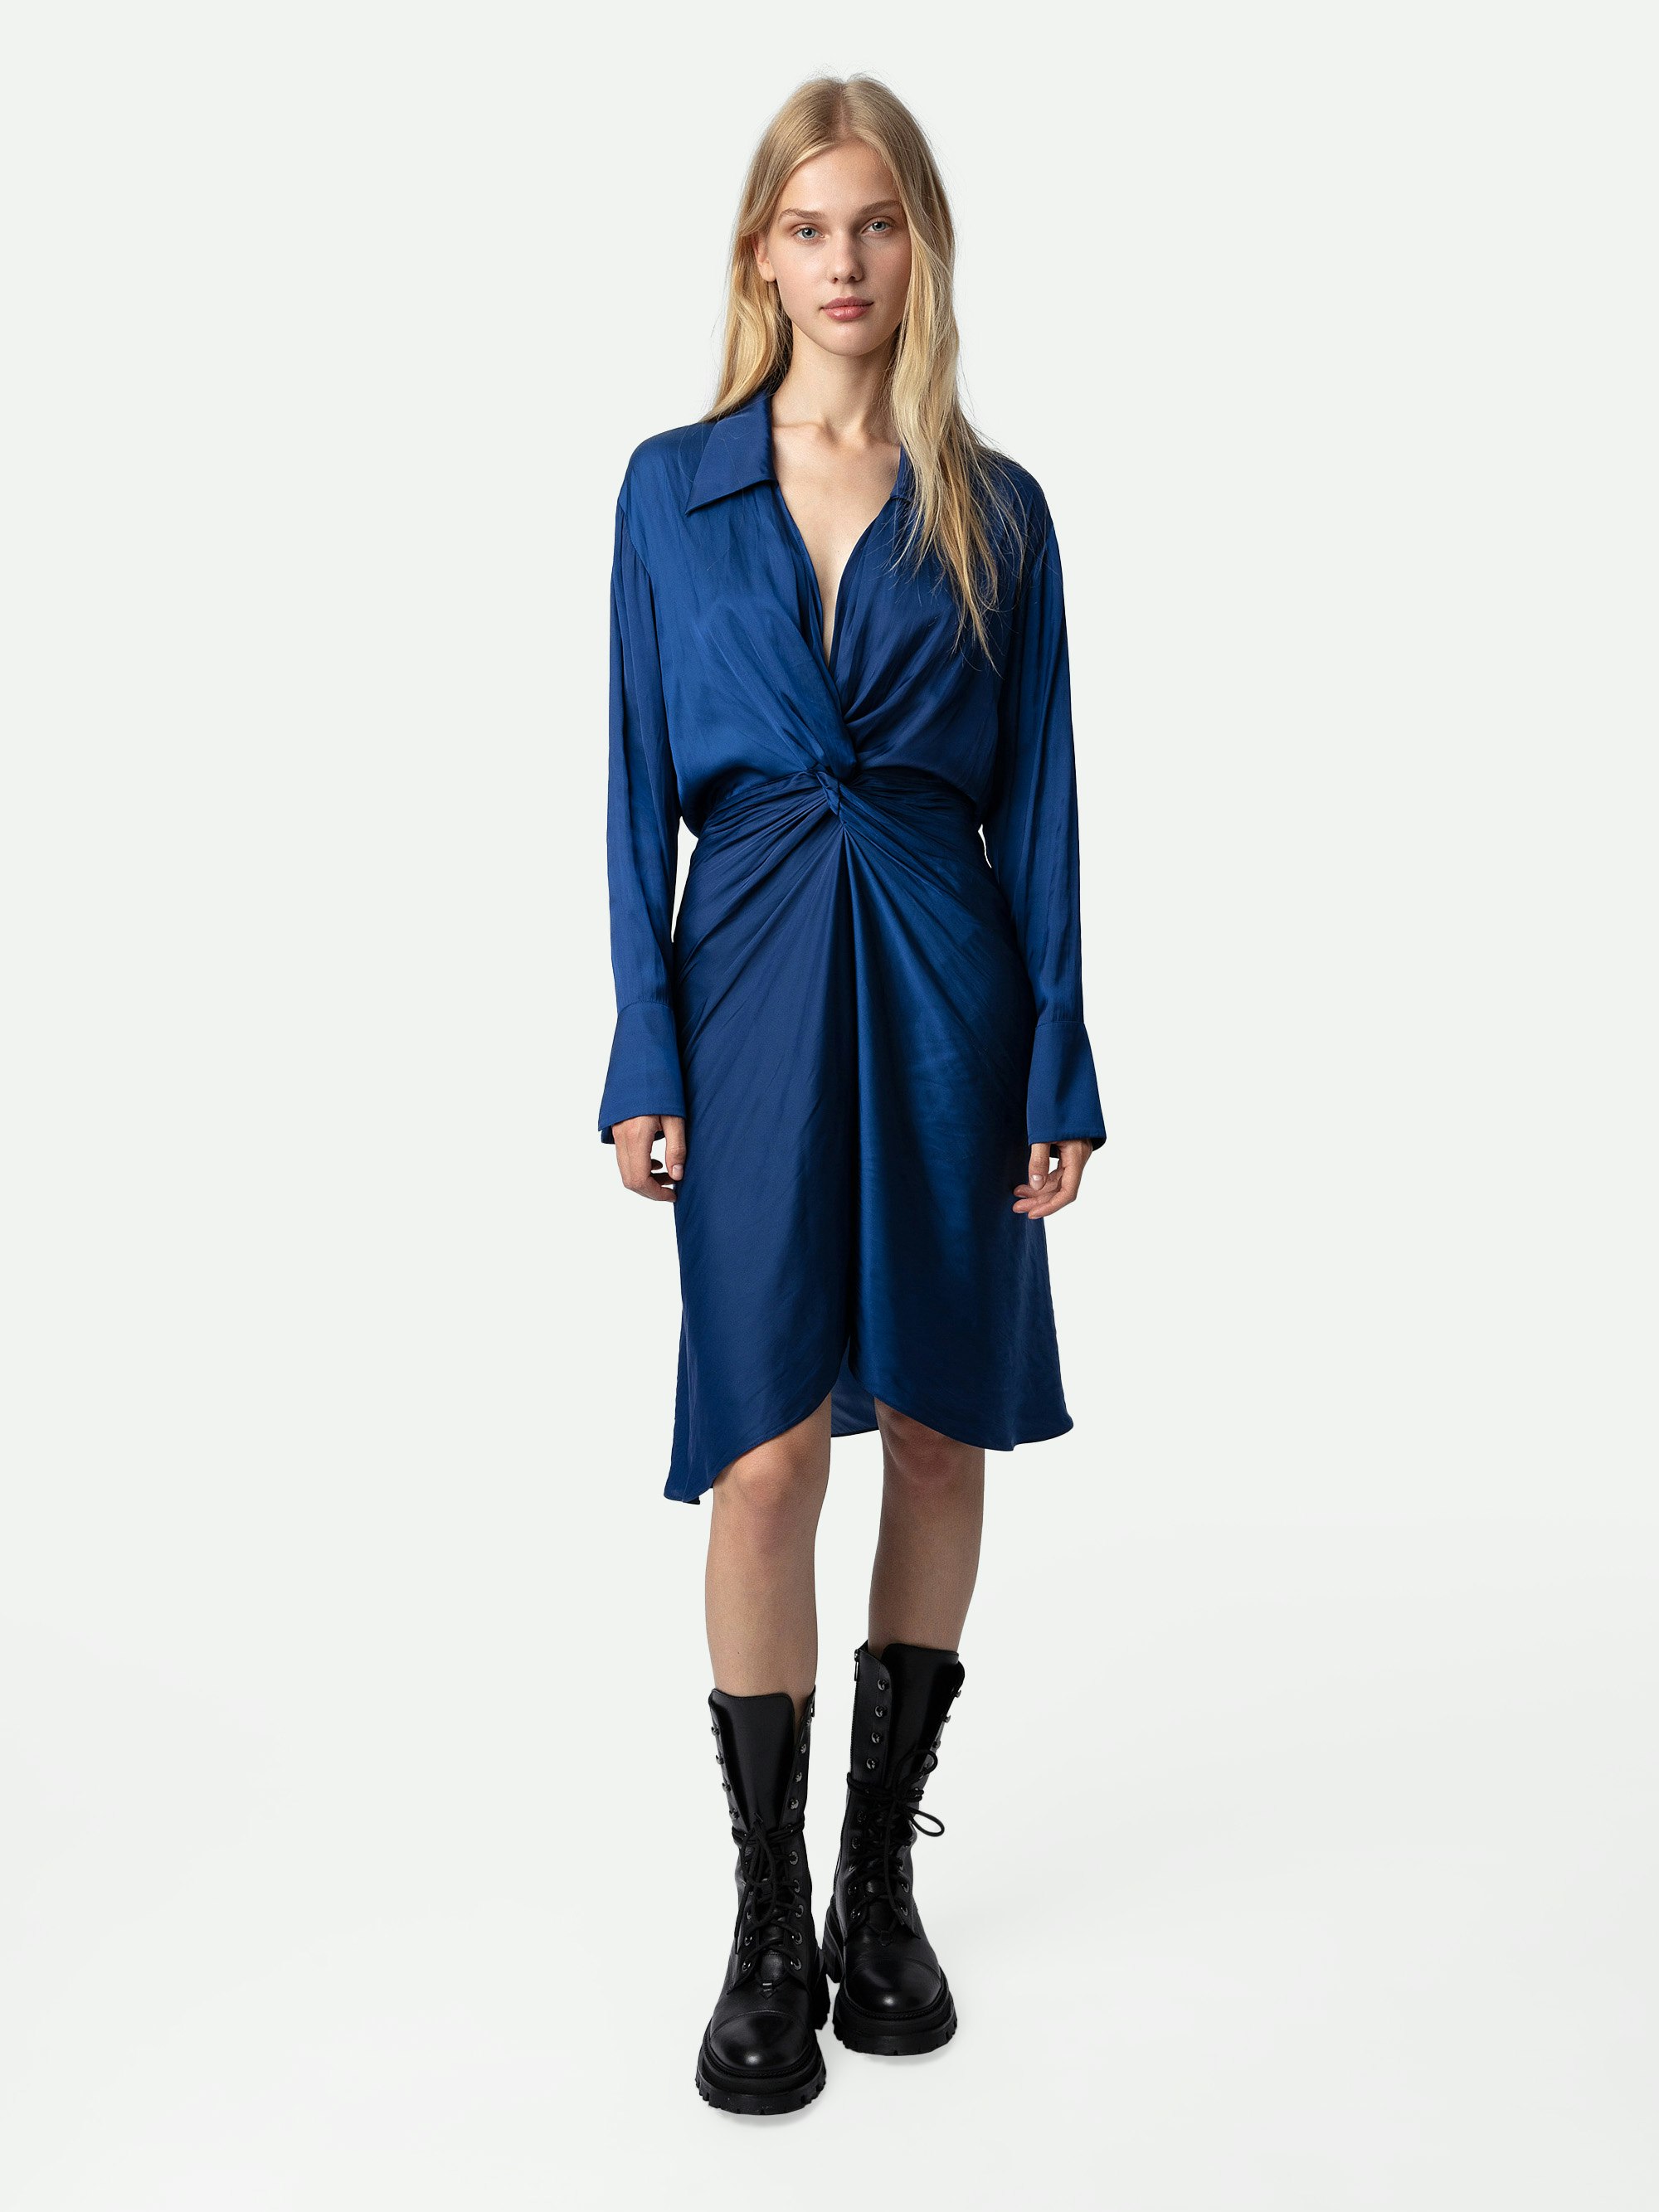 Vestido Rozo de Satén - Vestido azul real de satén de largo medio para mujer, drapeado en la cintura.